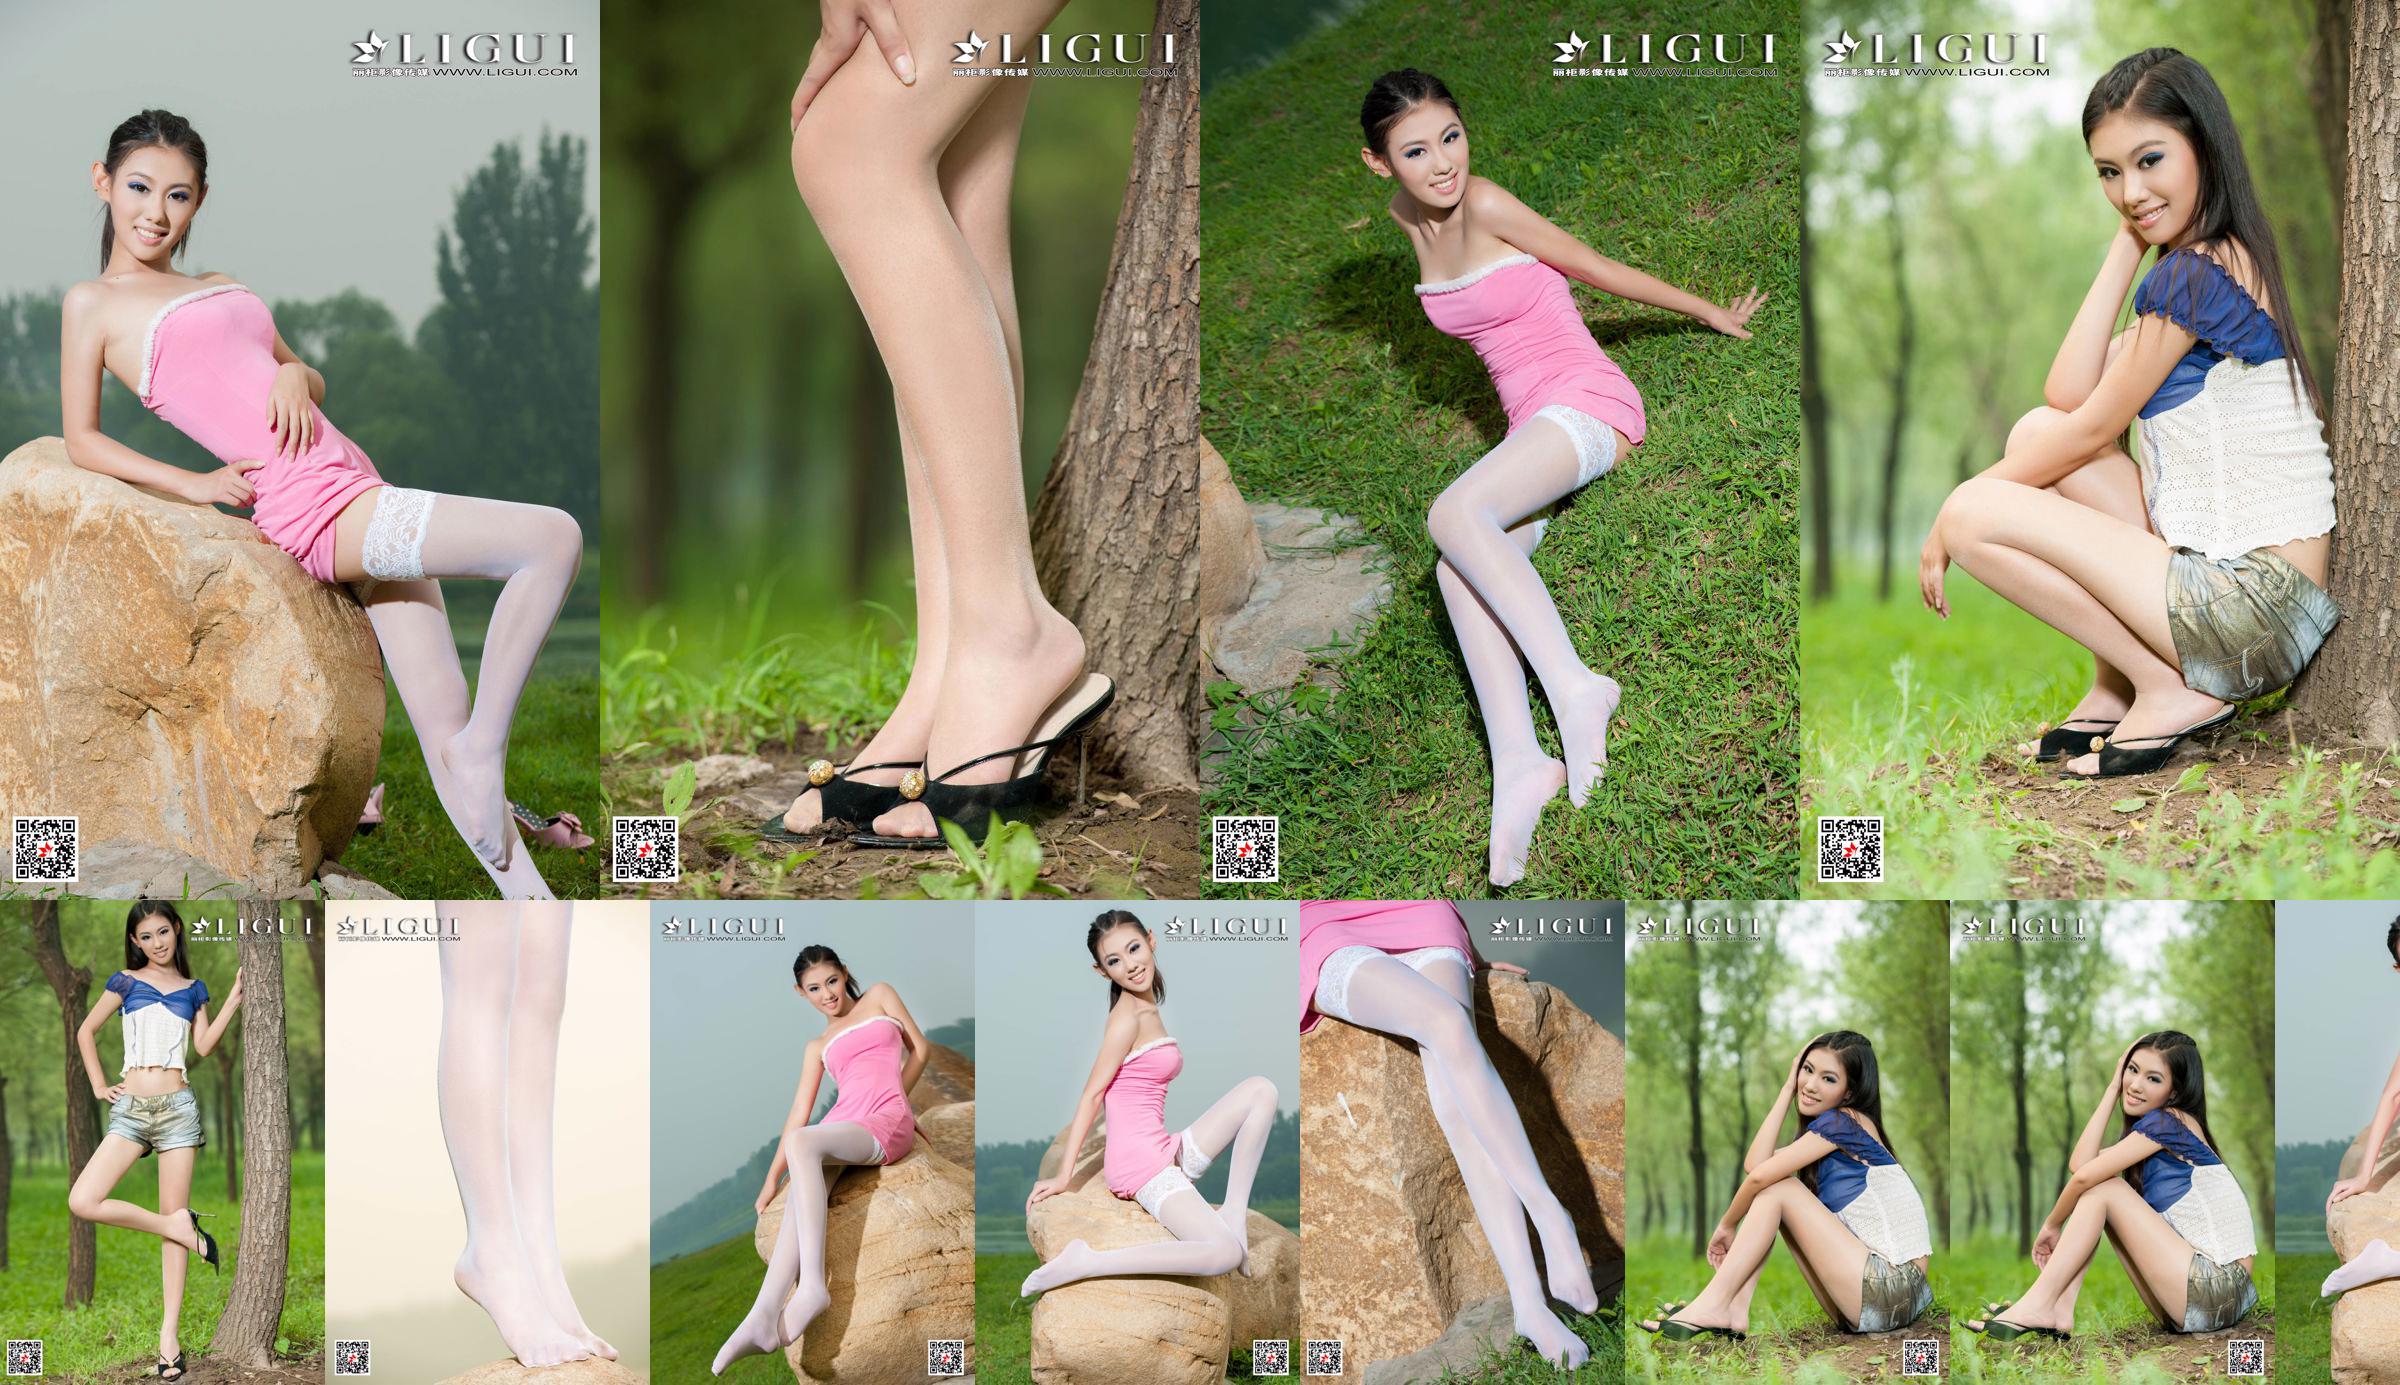 [丽 柜 Ligui] Modelo Wei Ling "Chica de piernas largas" Hermosas piernas No.3989b1 Página 1